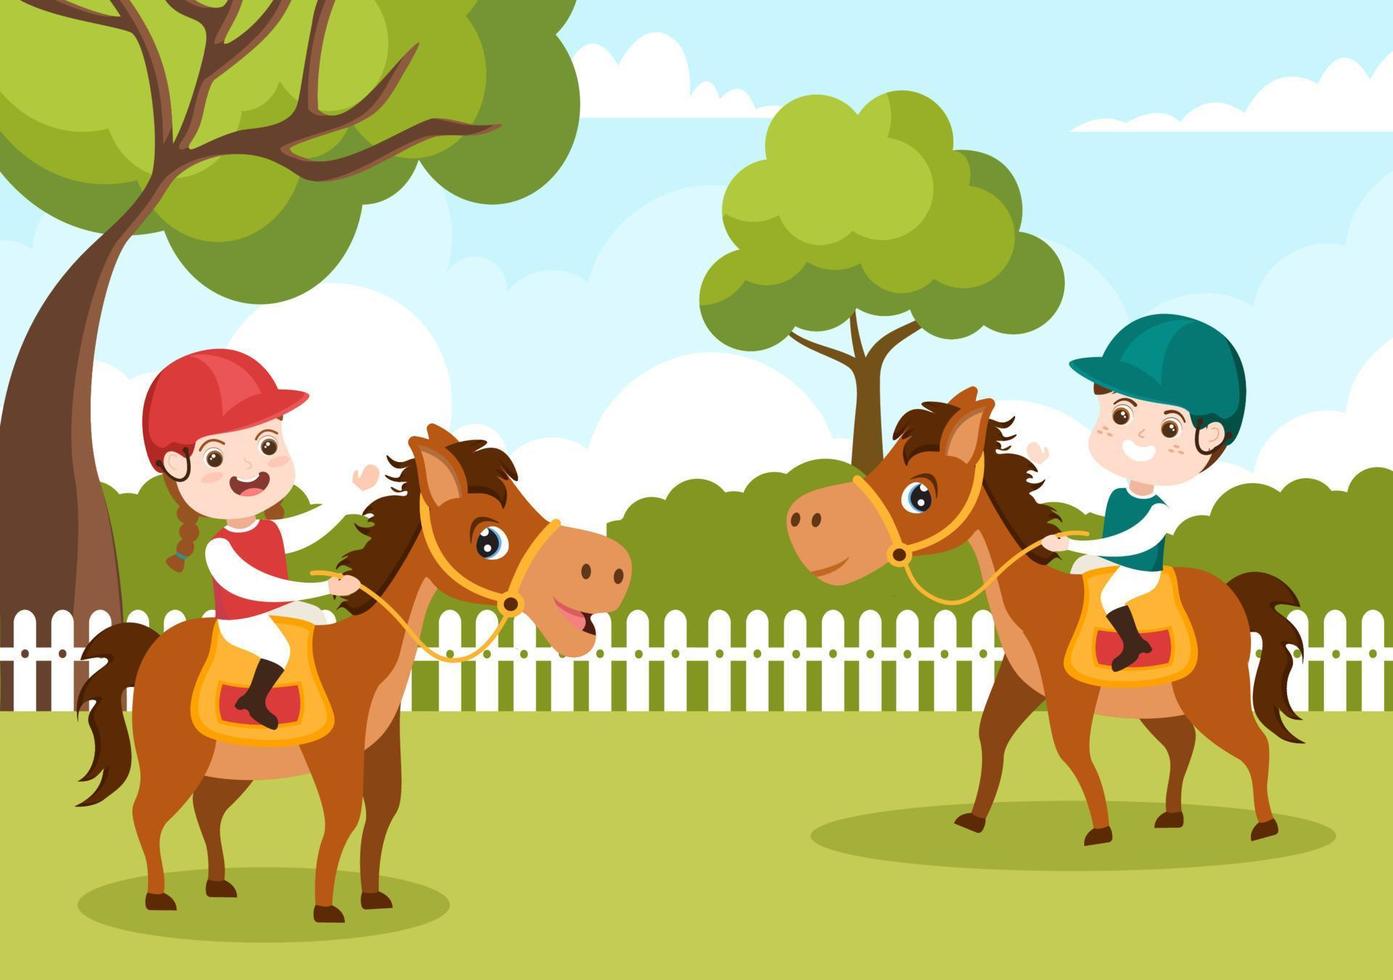 entrenador de caballos deportivos ecuestres con niños montando caballos y corriendo en ilustración de plantilla dibujada a mano de dibujos animados planos vector